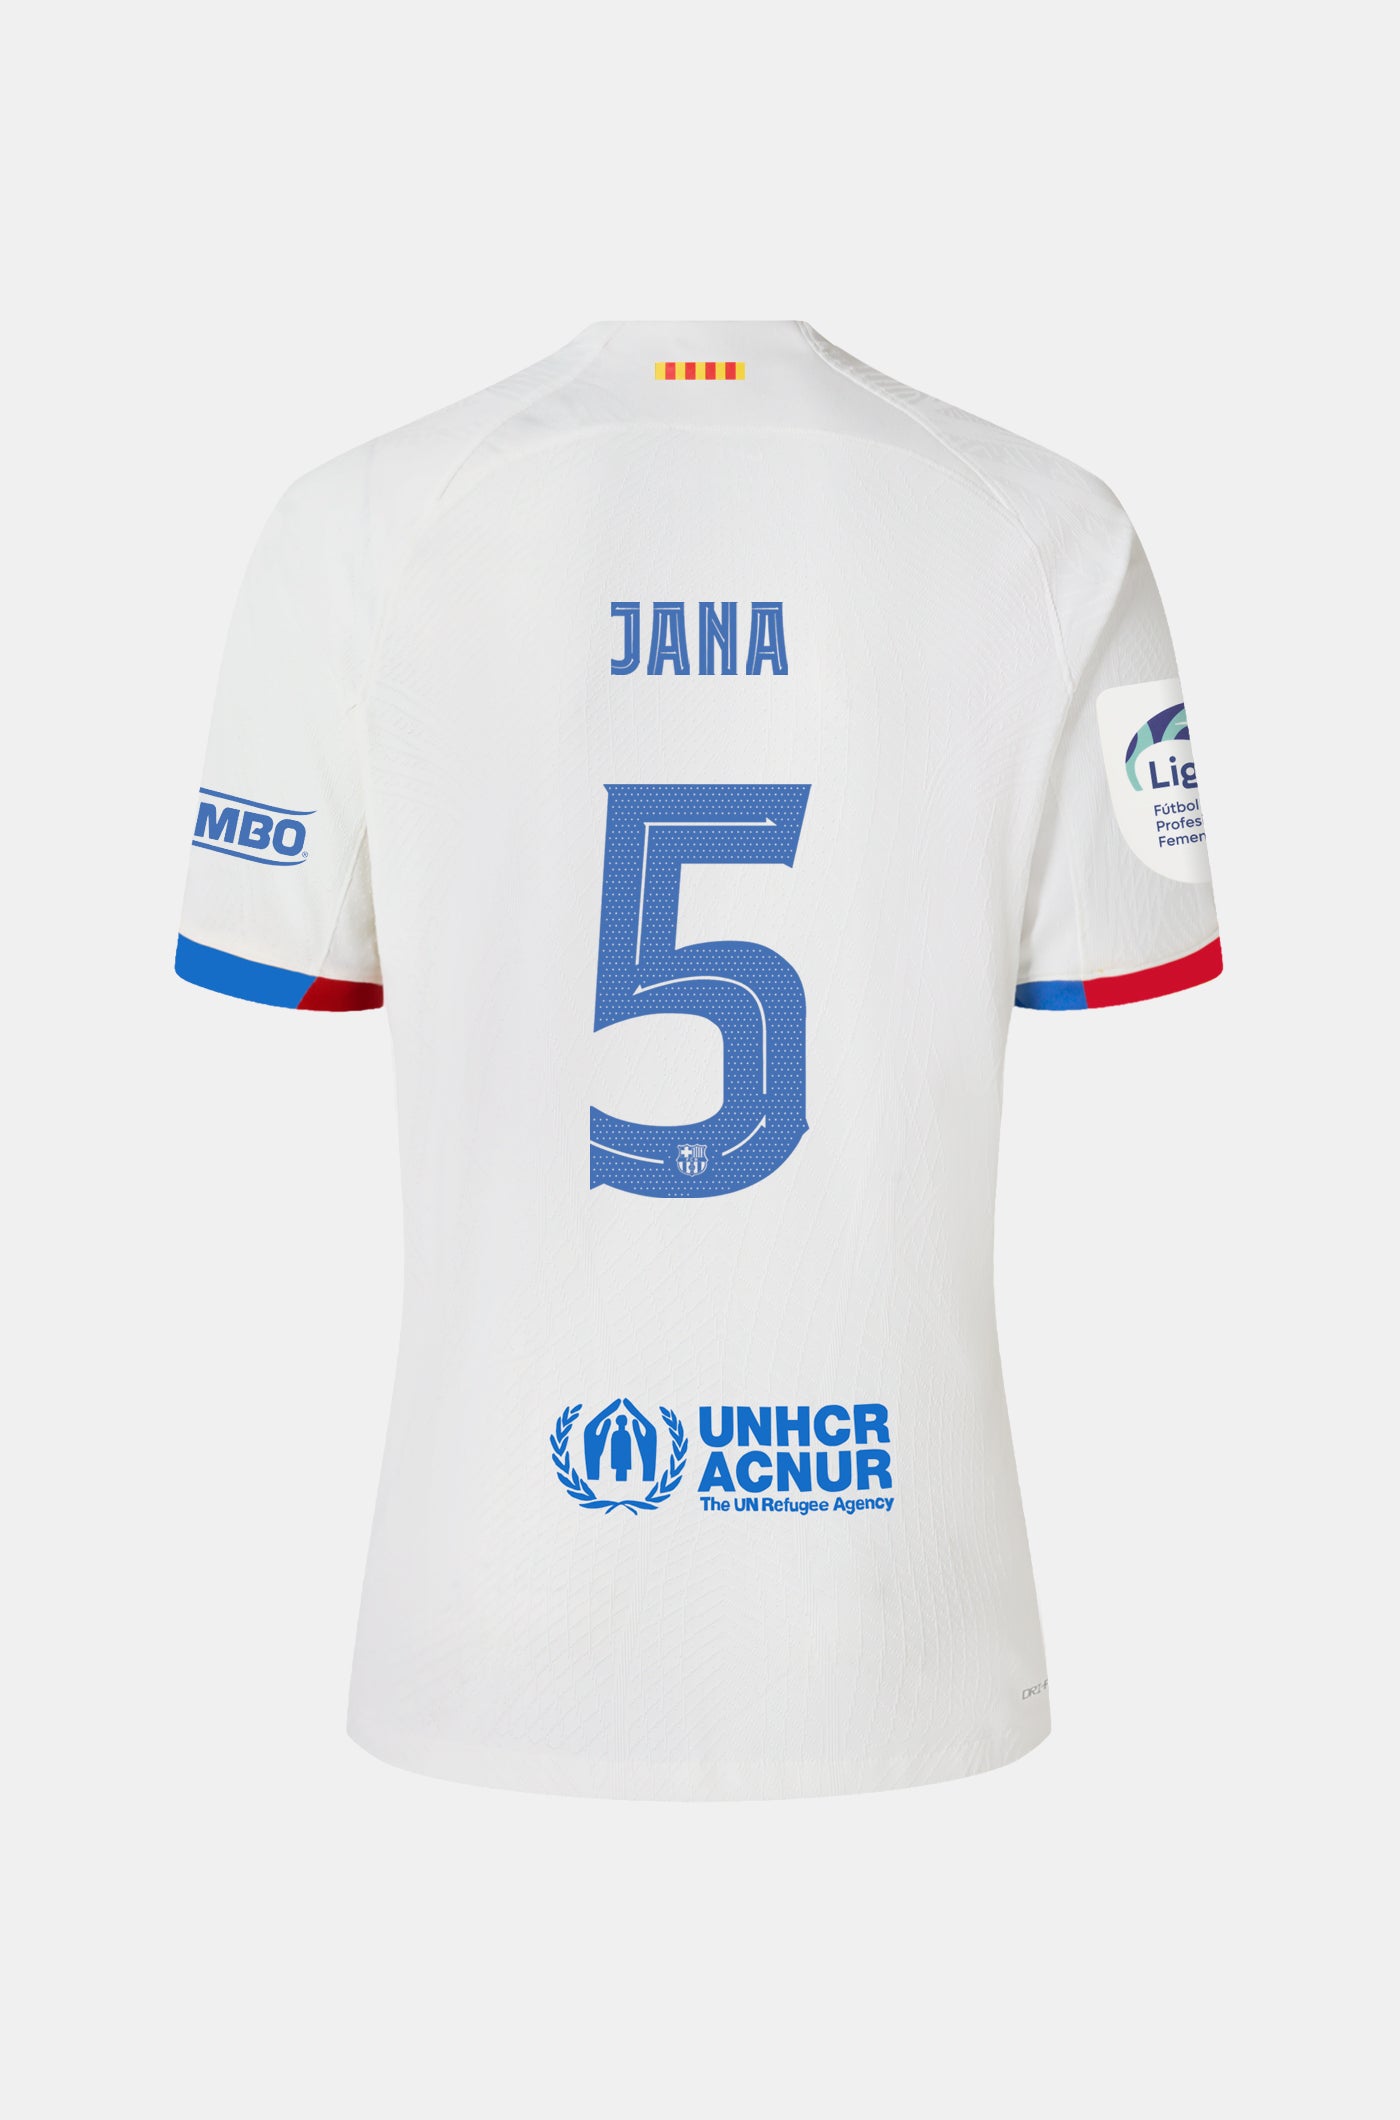 Liga F Samarreta segon equipament FC Barcelona 23/24 - Home- JANA